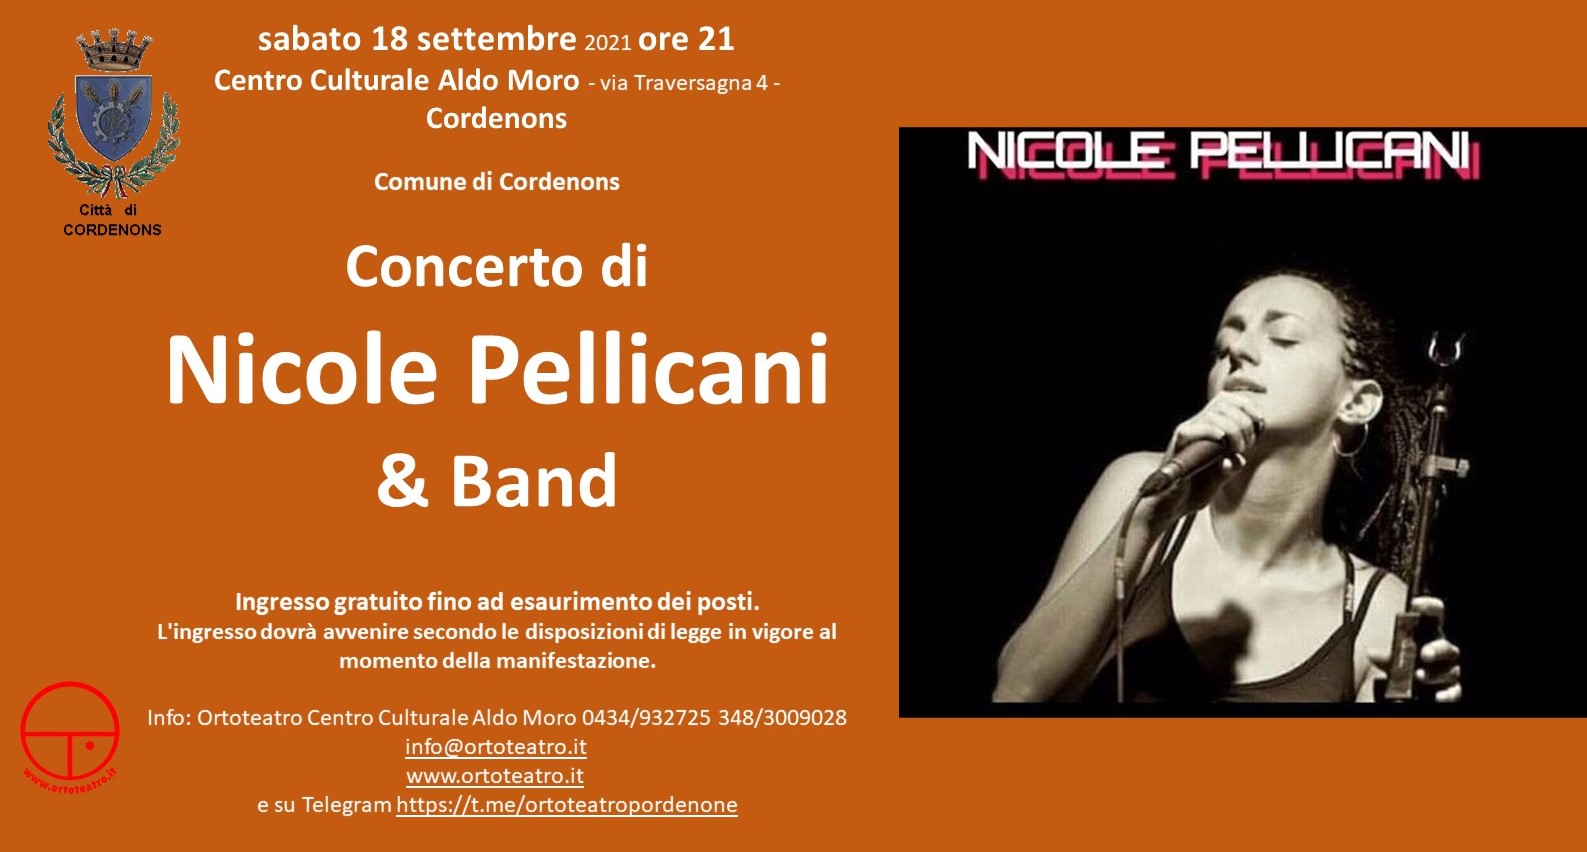 A Cordenons Concerto di Nicole Pellicani & Band - EventiFVG.it